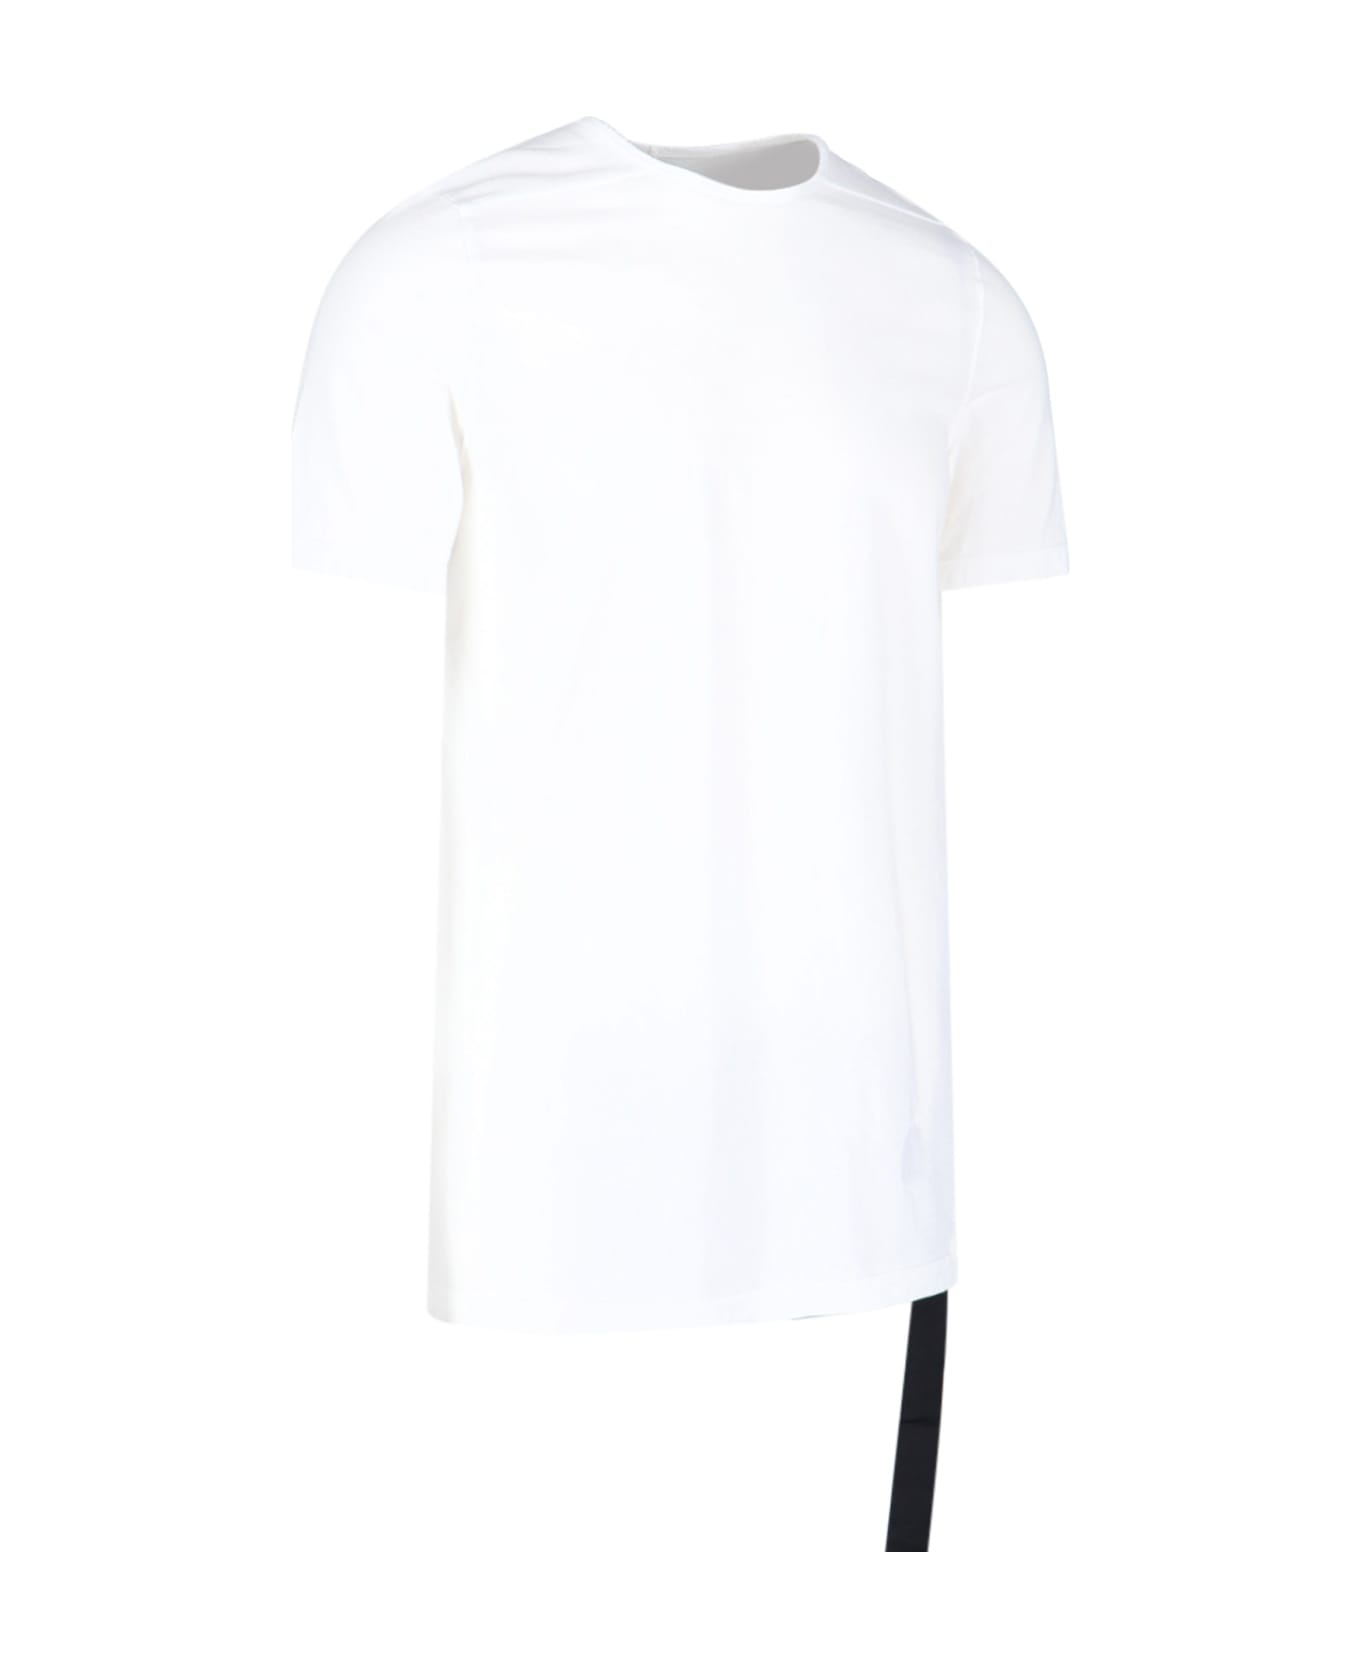 DRKSHDW T-Shirt - White